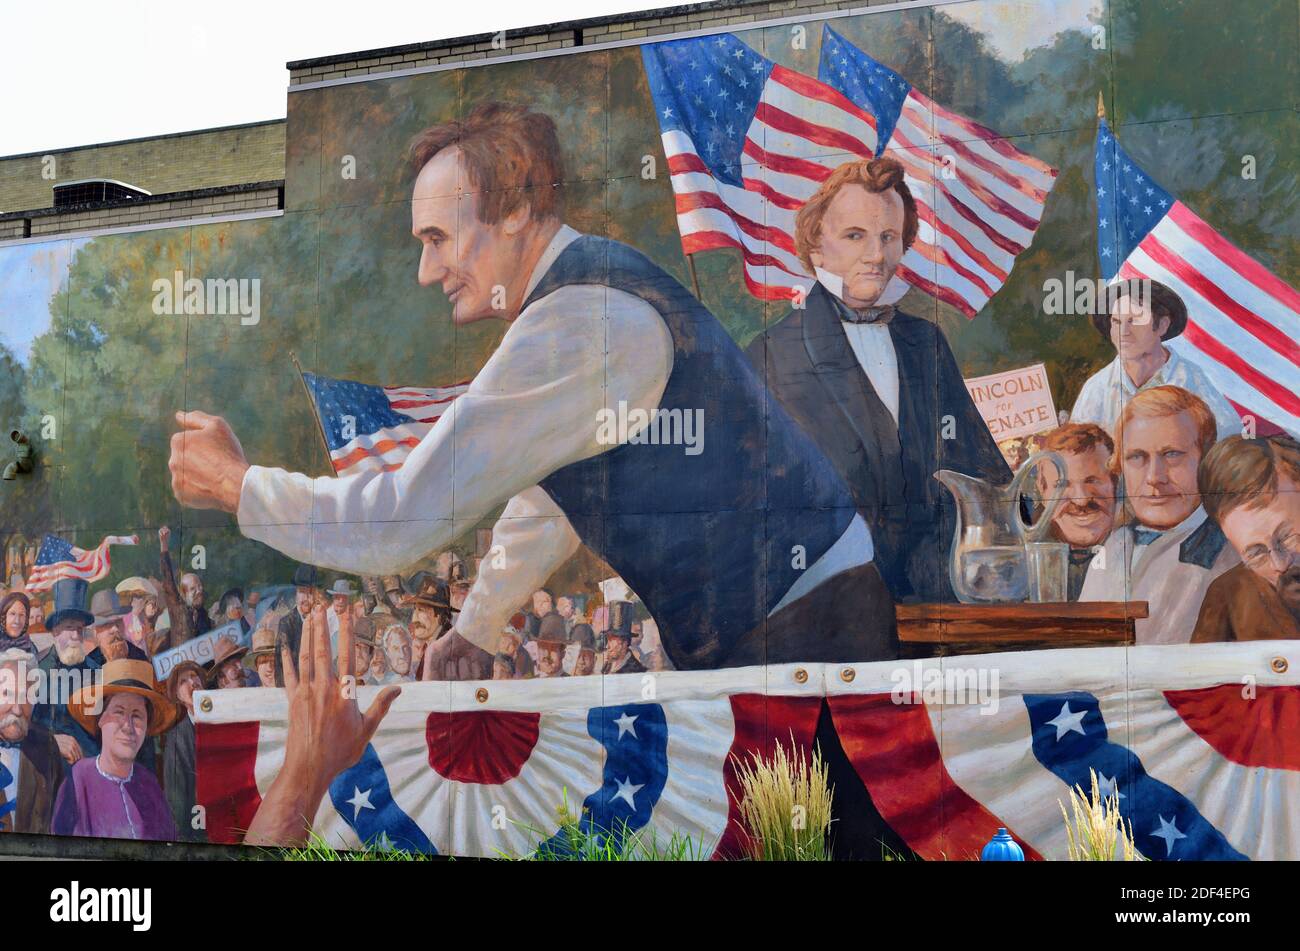 Ottawa, Illinois, USA. Ein Wandgemälde von Abraham Lincoln und Stephen Douglas ziert eine Wand neben Ottawas historischem Washington Square Park. Stockfoto